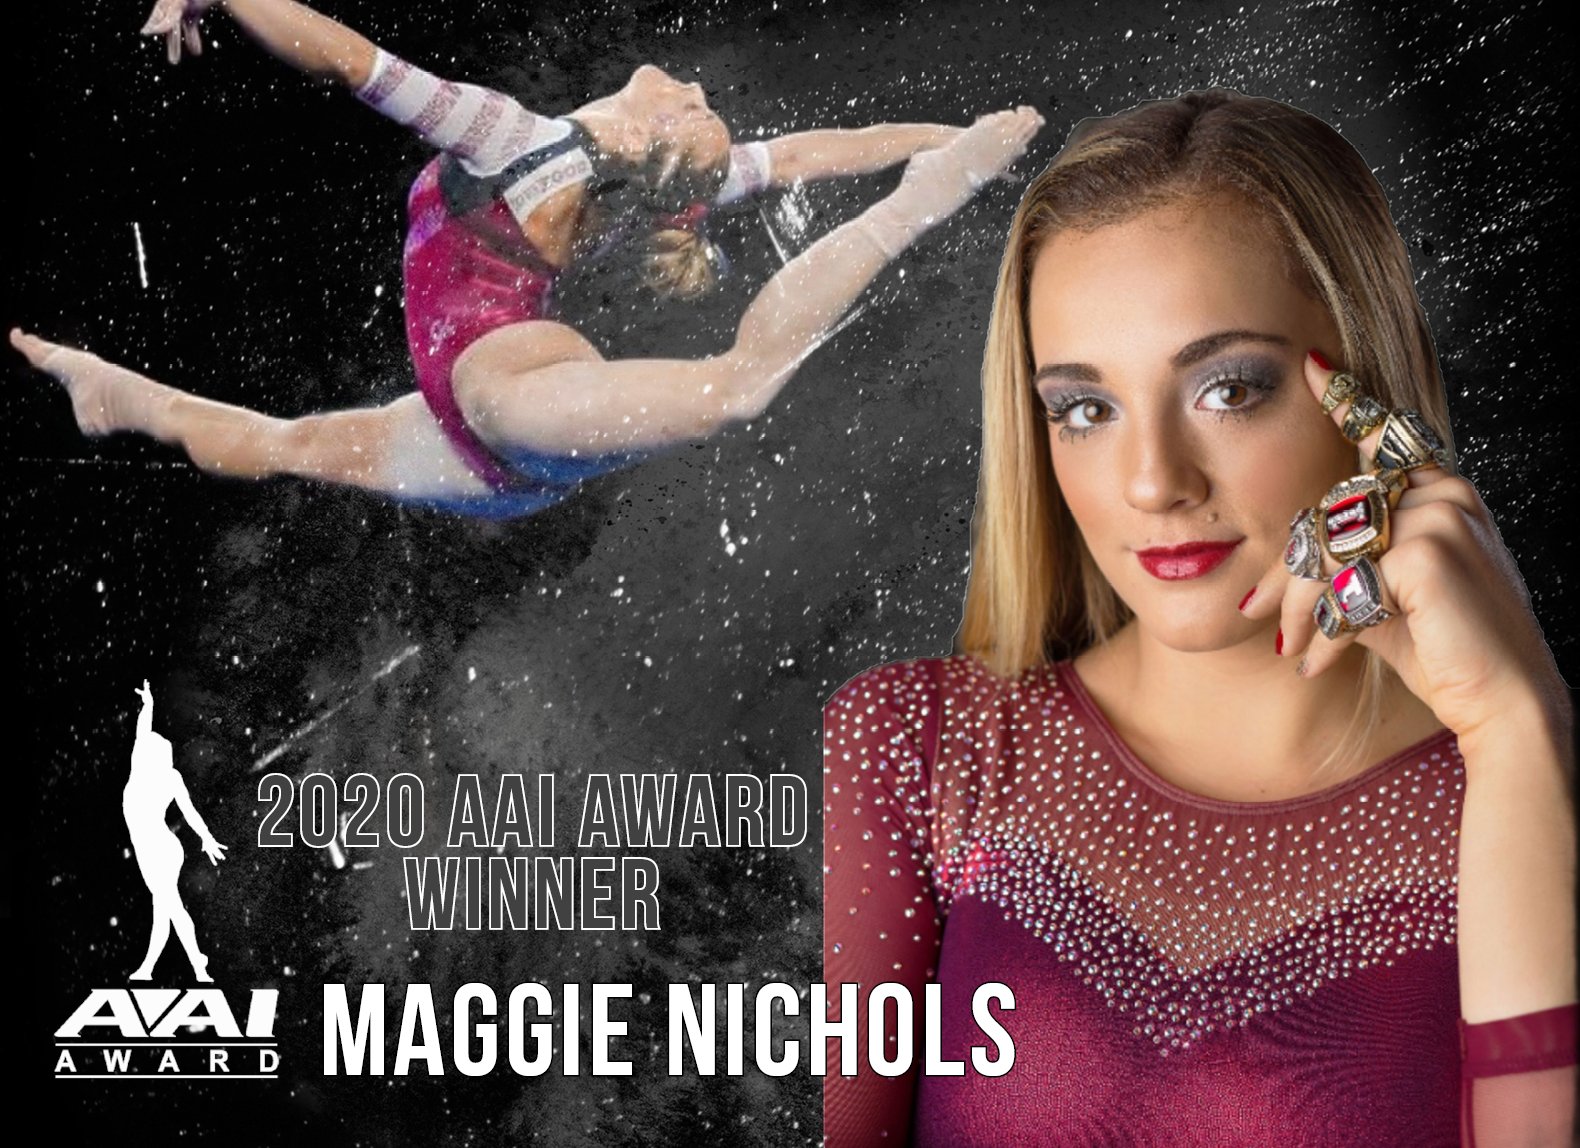 Maggie Nichols wins 2020 AAI Award